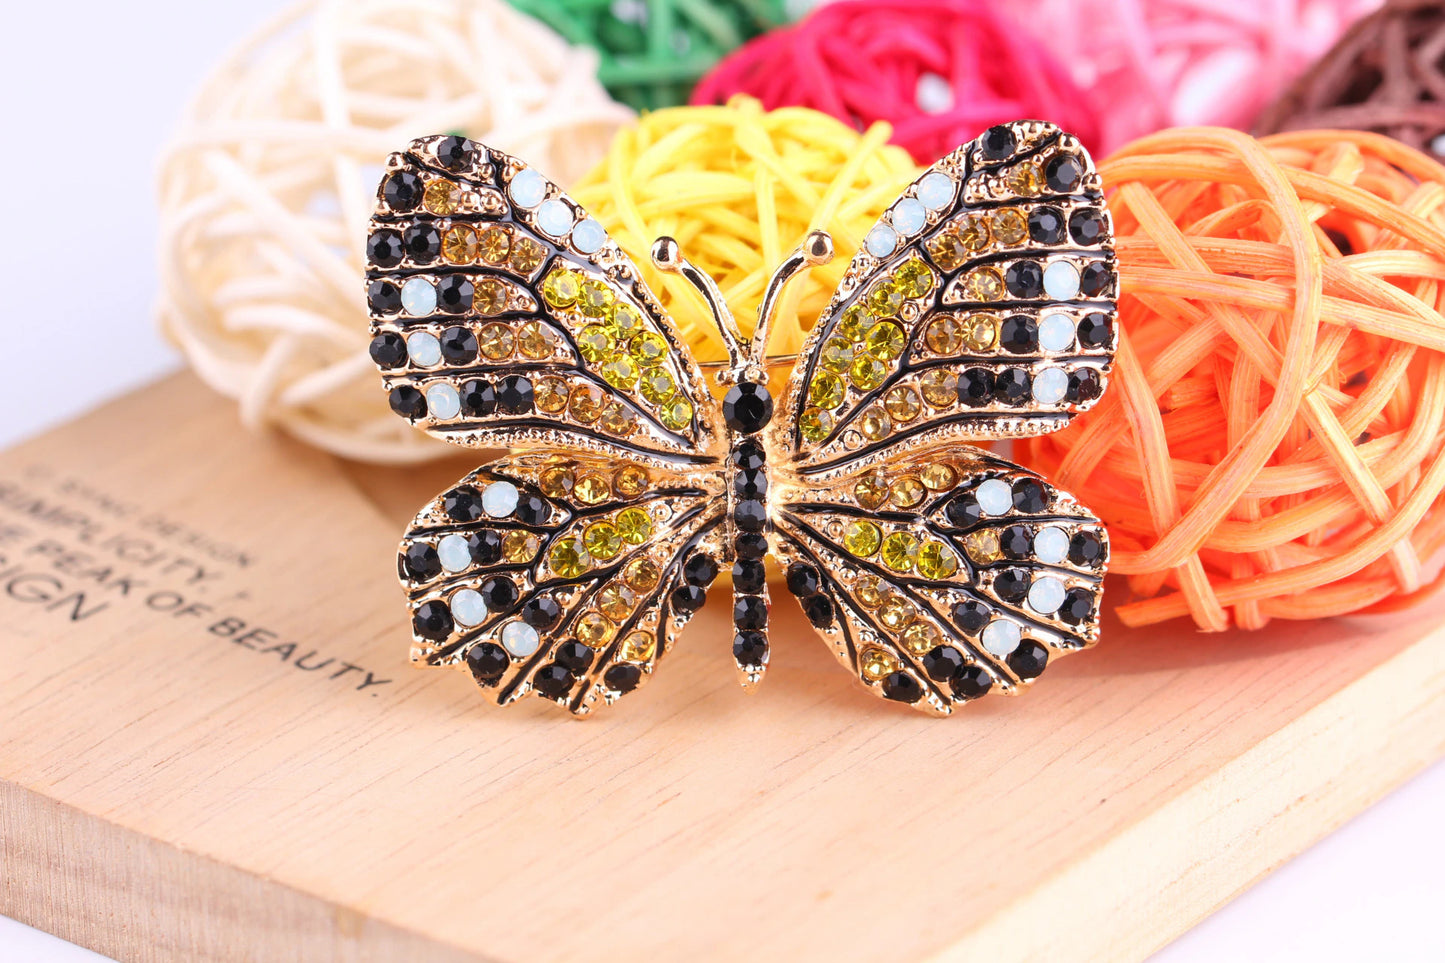 Rhinestone butterfly brooch